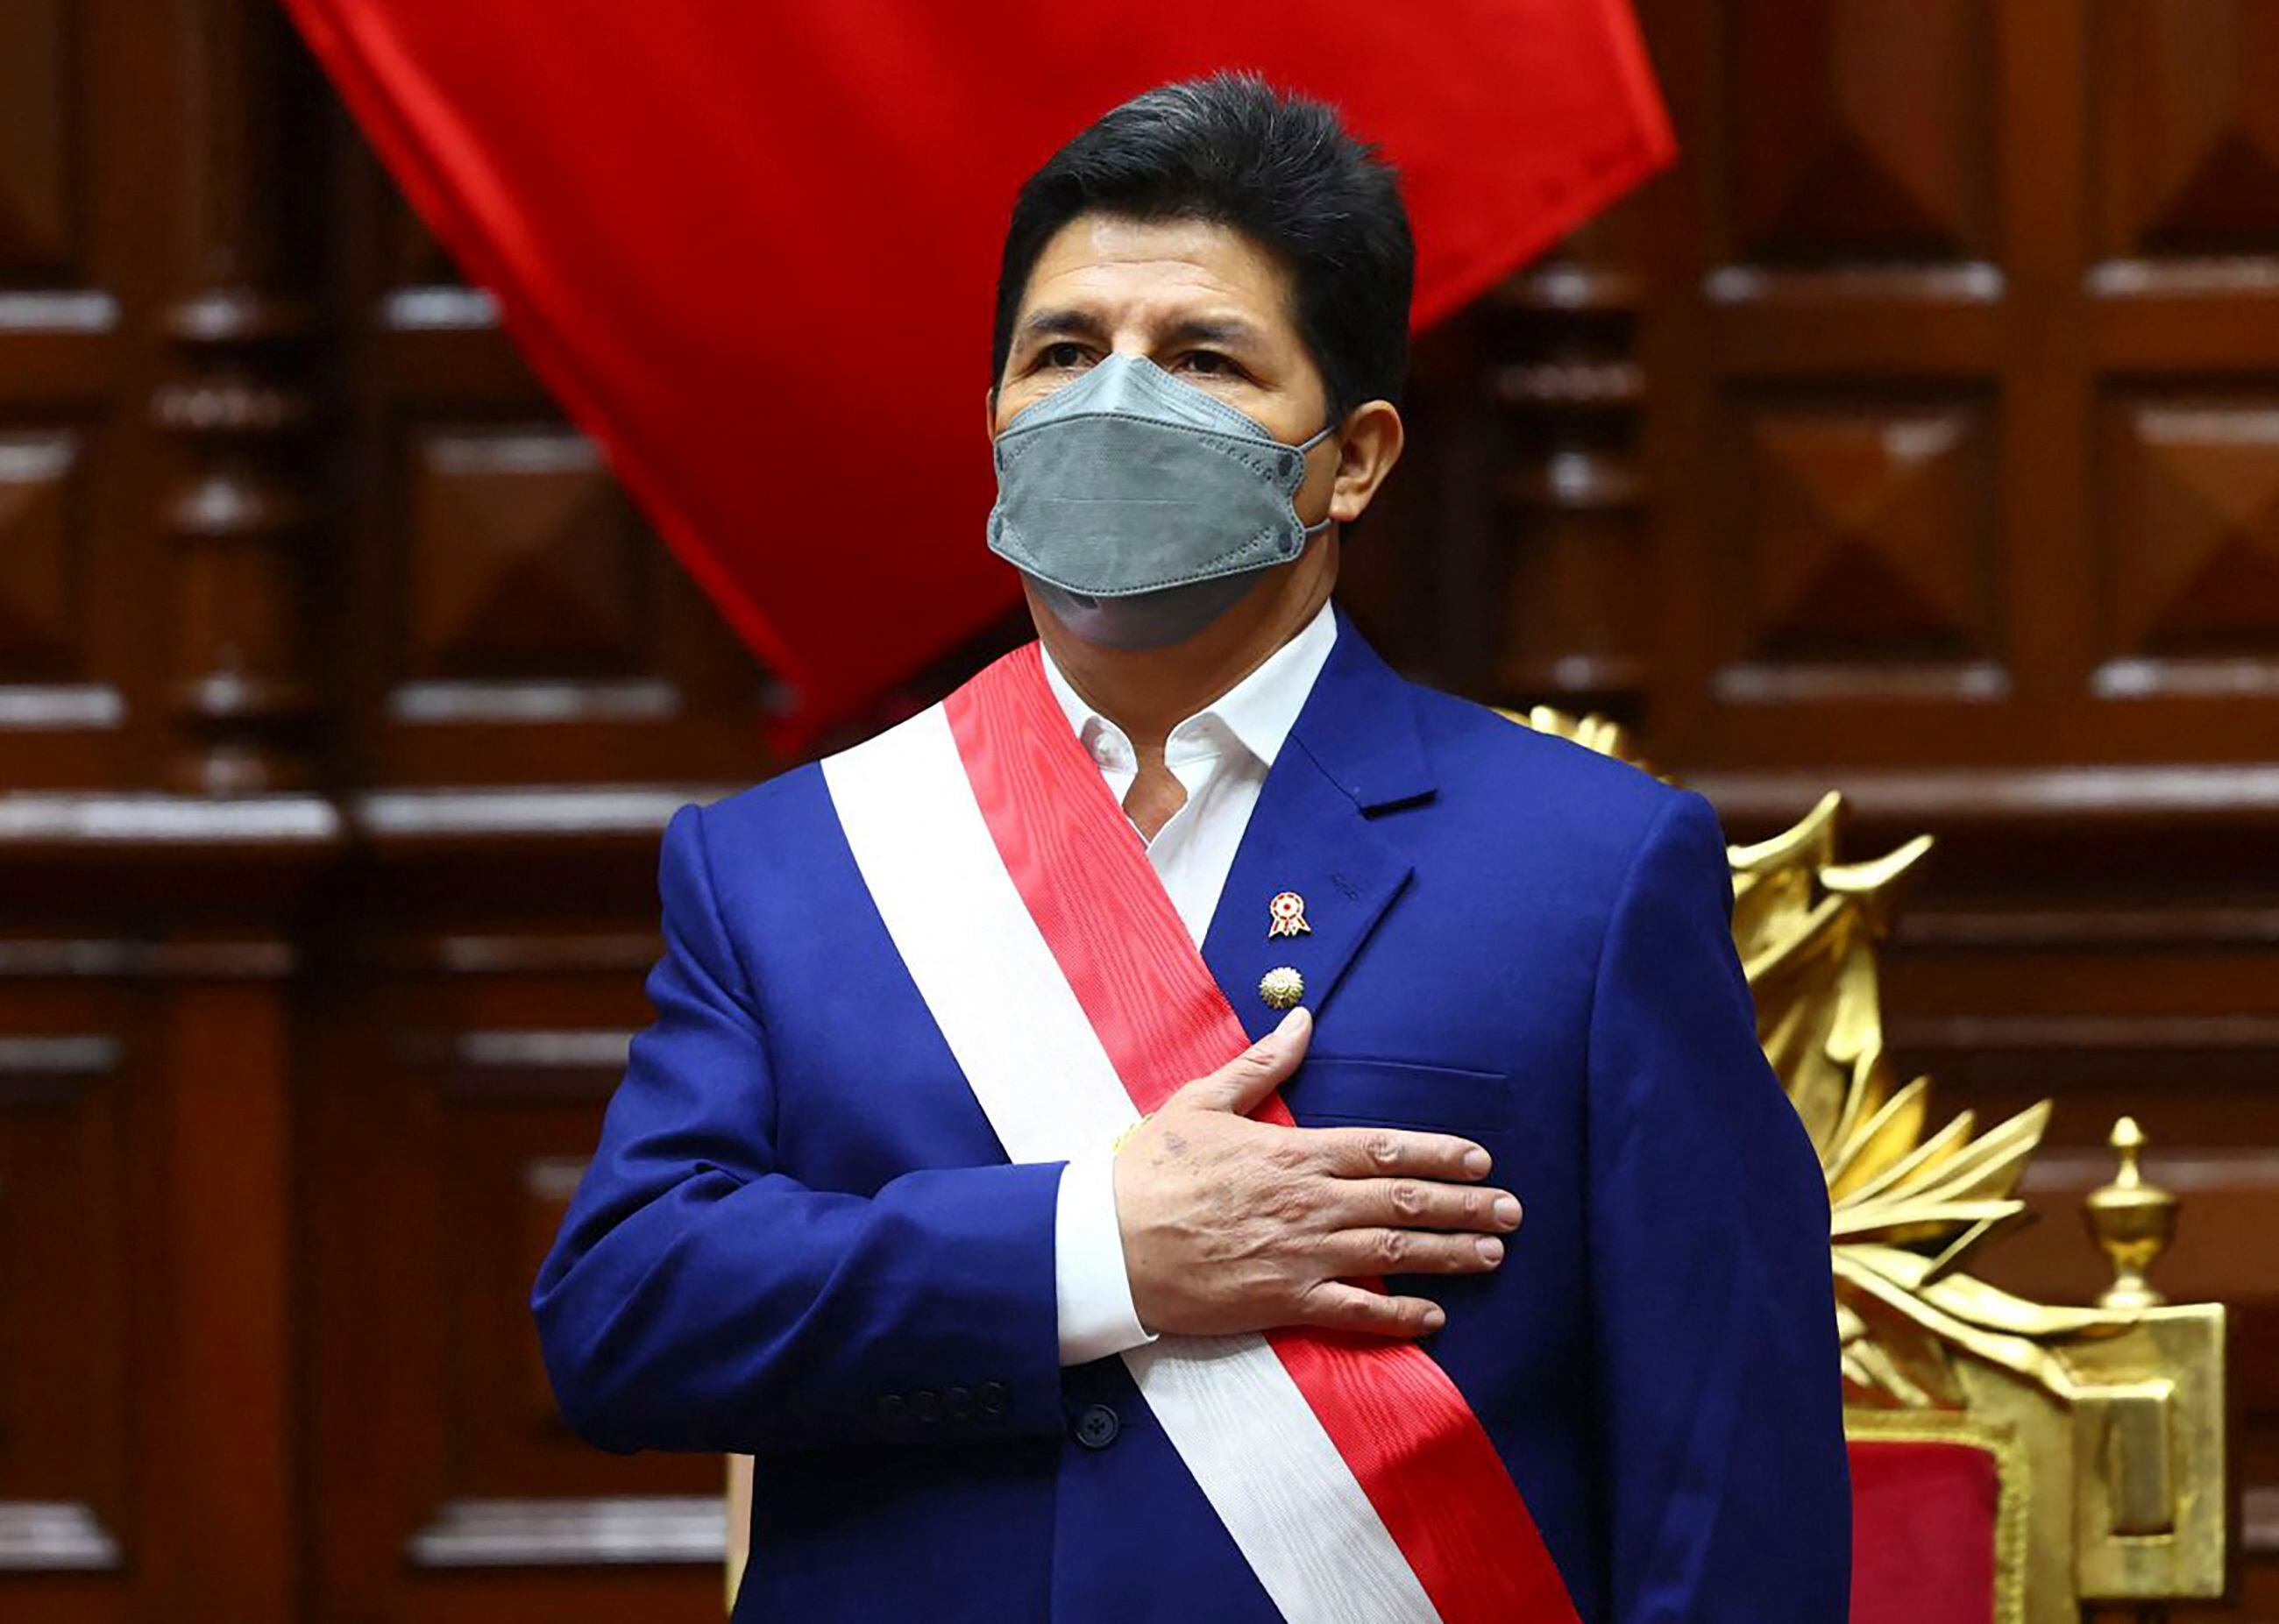 El presidente de Perú, Pedro Castillo, escucha el himno nacional antes de pronunciar su discurso sobre el Estado de la Nación en el Congreso, al cumplir un año en el poder el Día de la Independencia, en Lima.